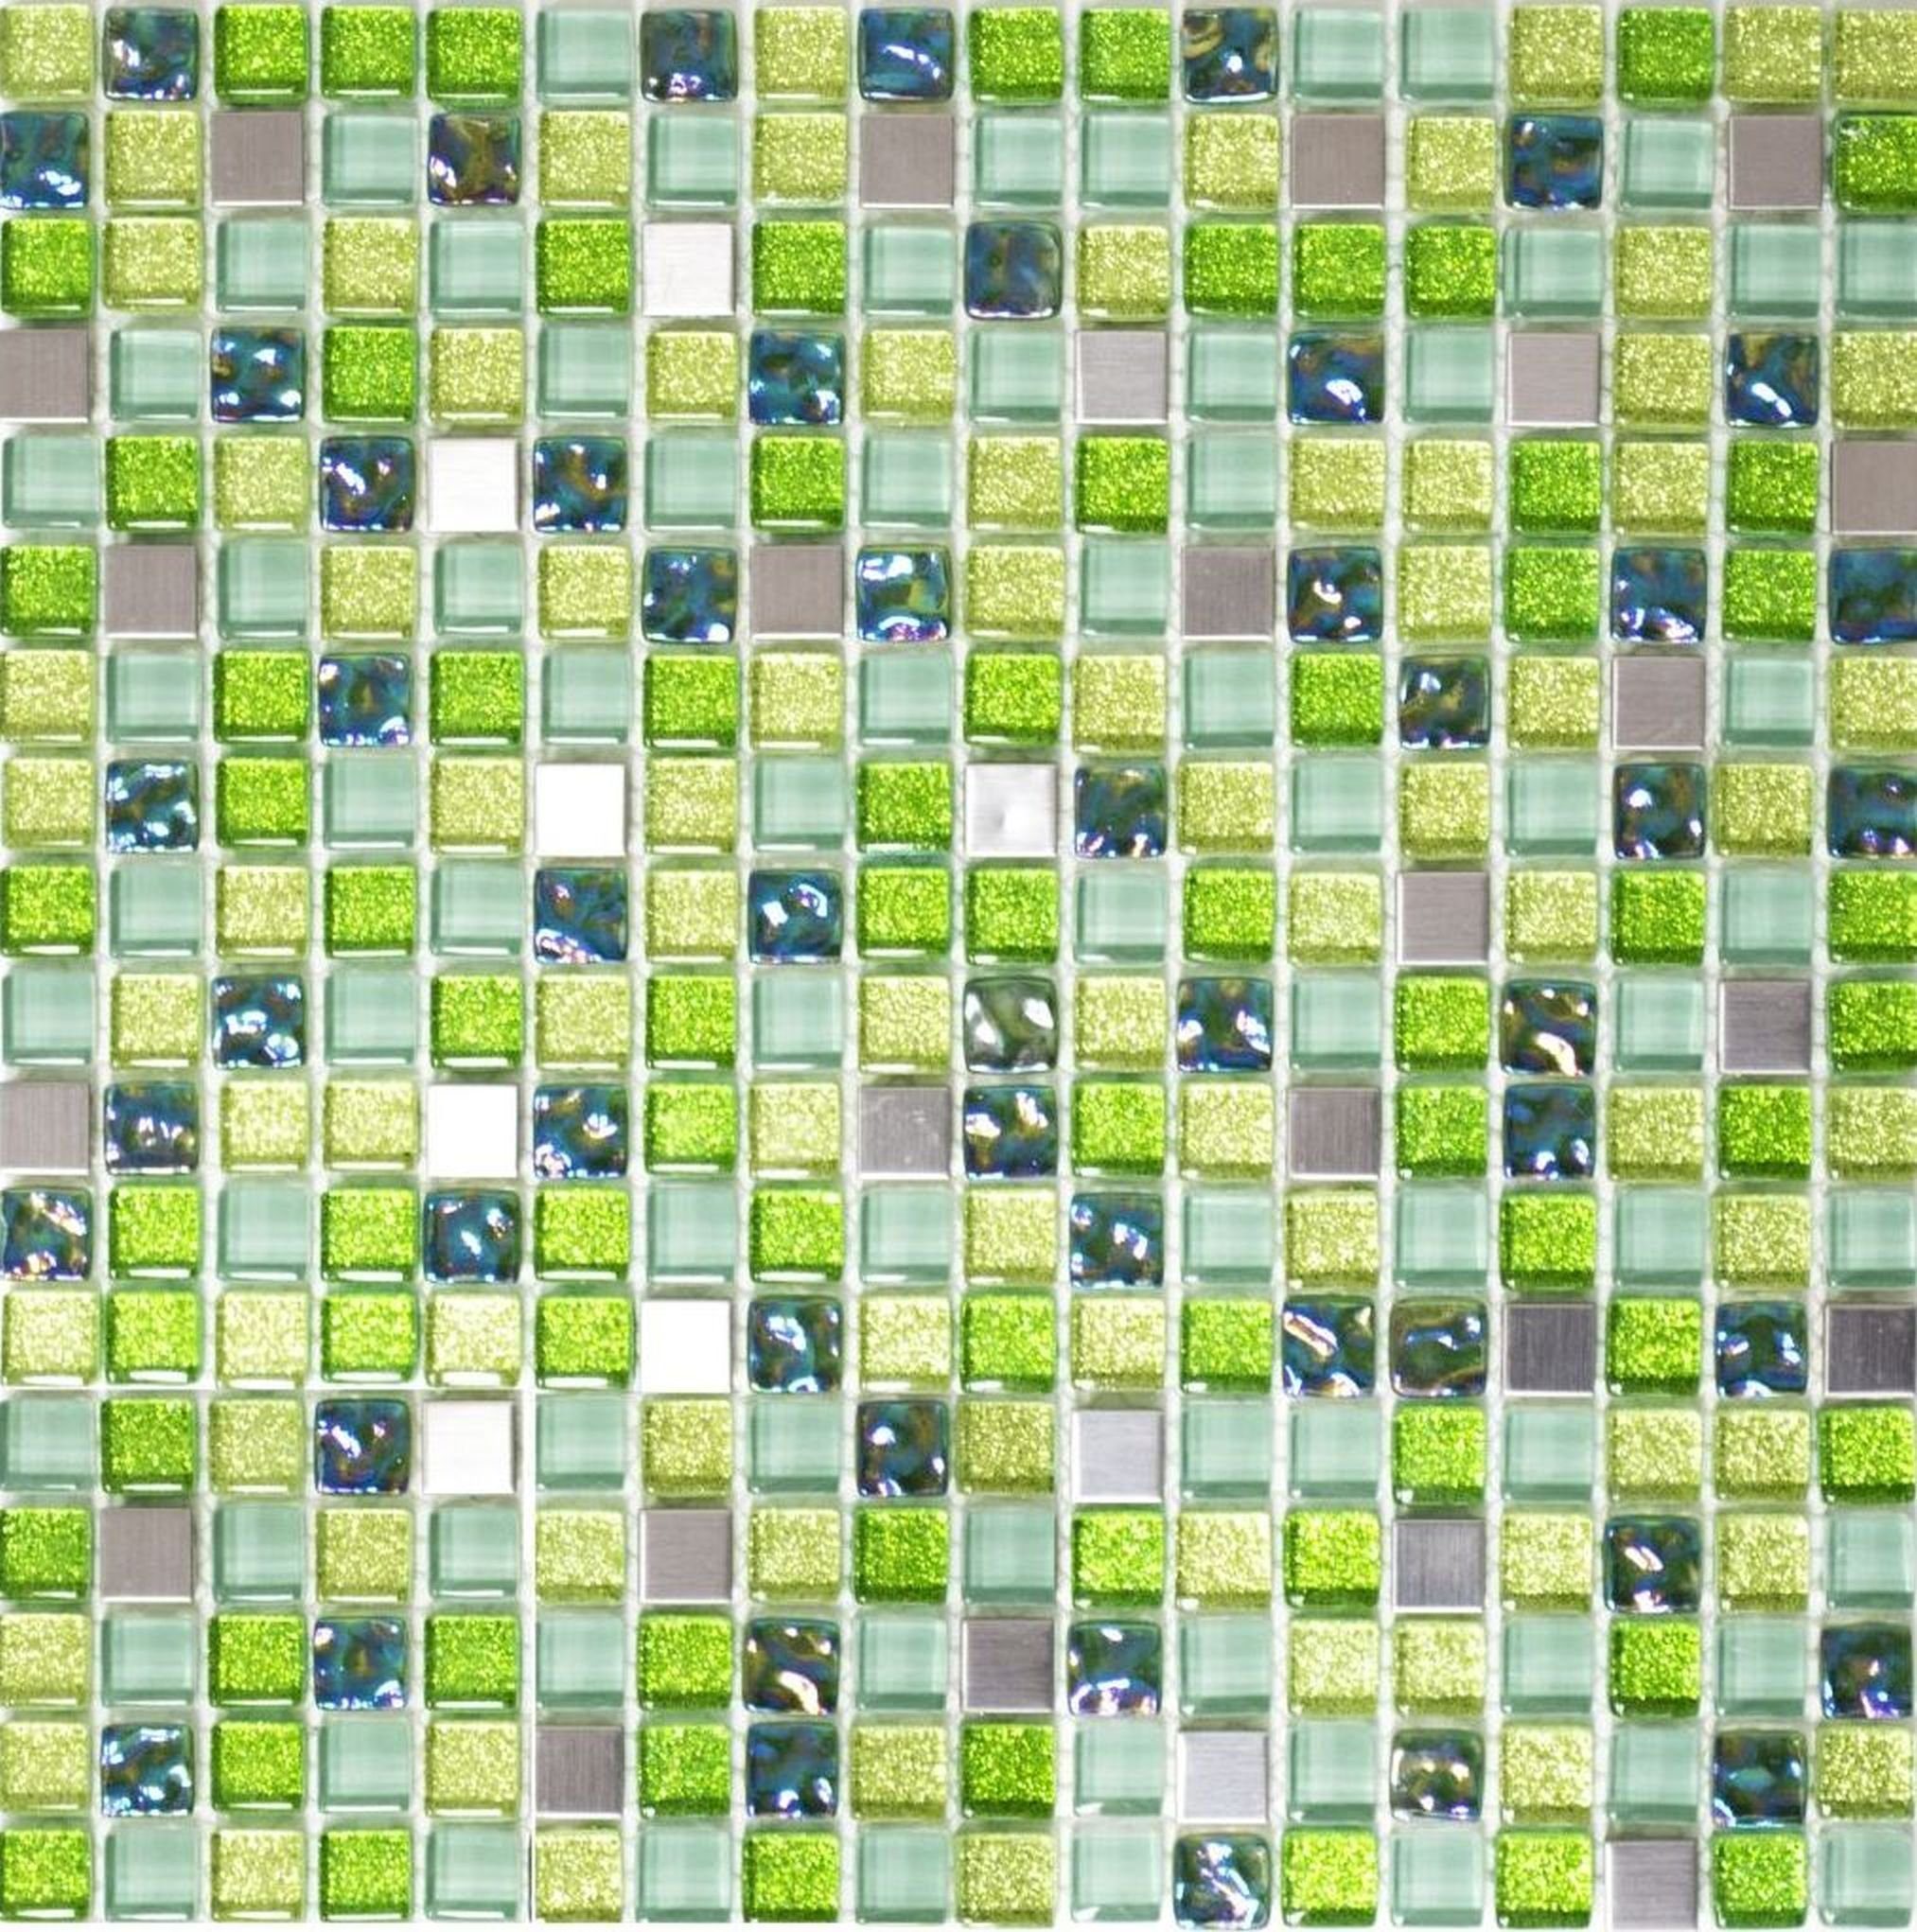 Edelstahl Mosani lime silber Mosaikfliese Mosaikfliesen grün Glasmosaik